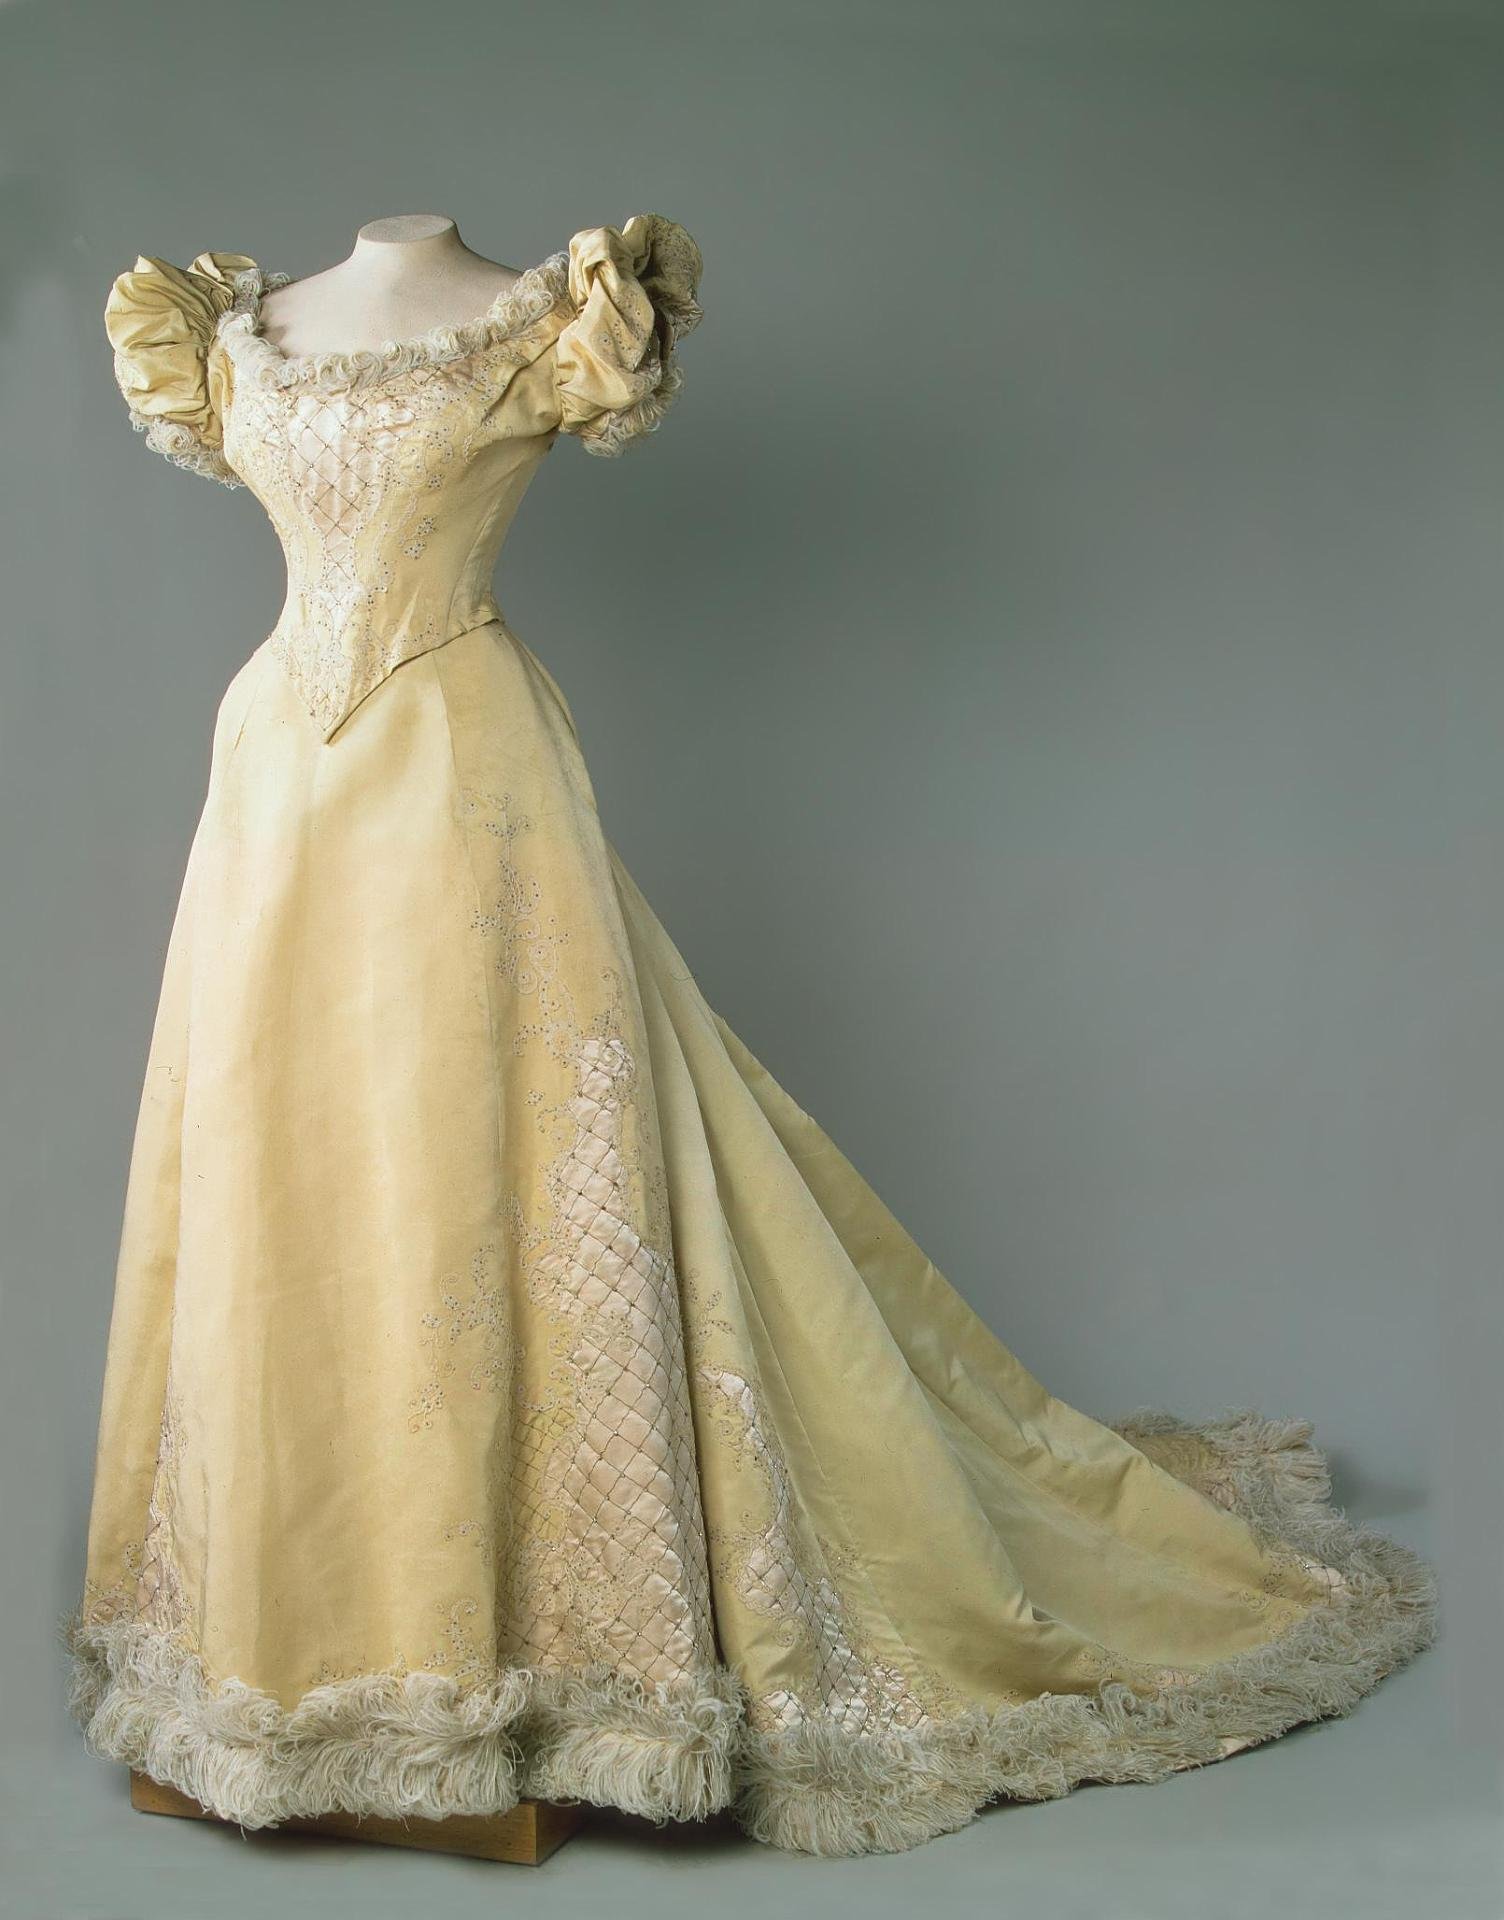 Аристократка 19 века в бальном платье